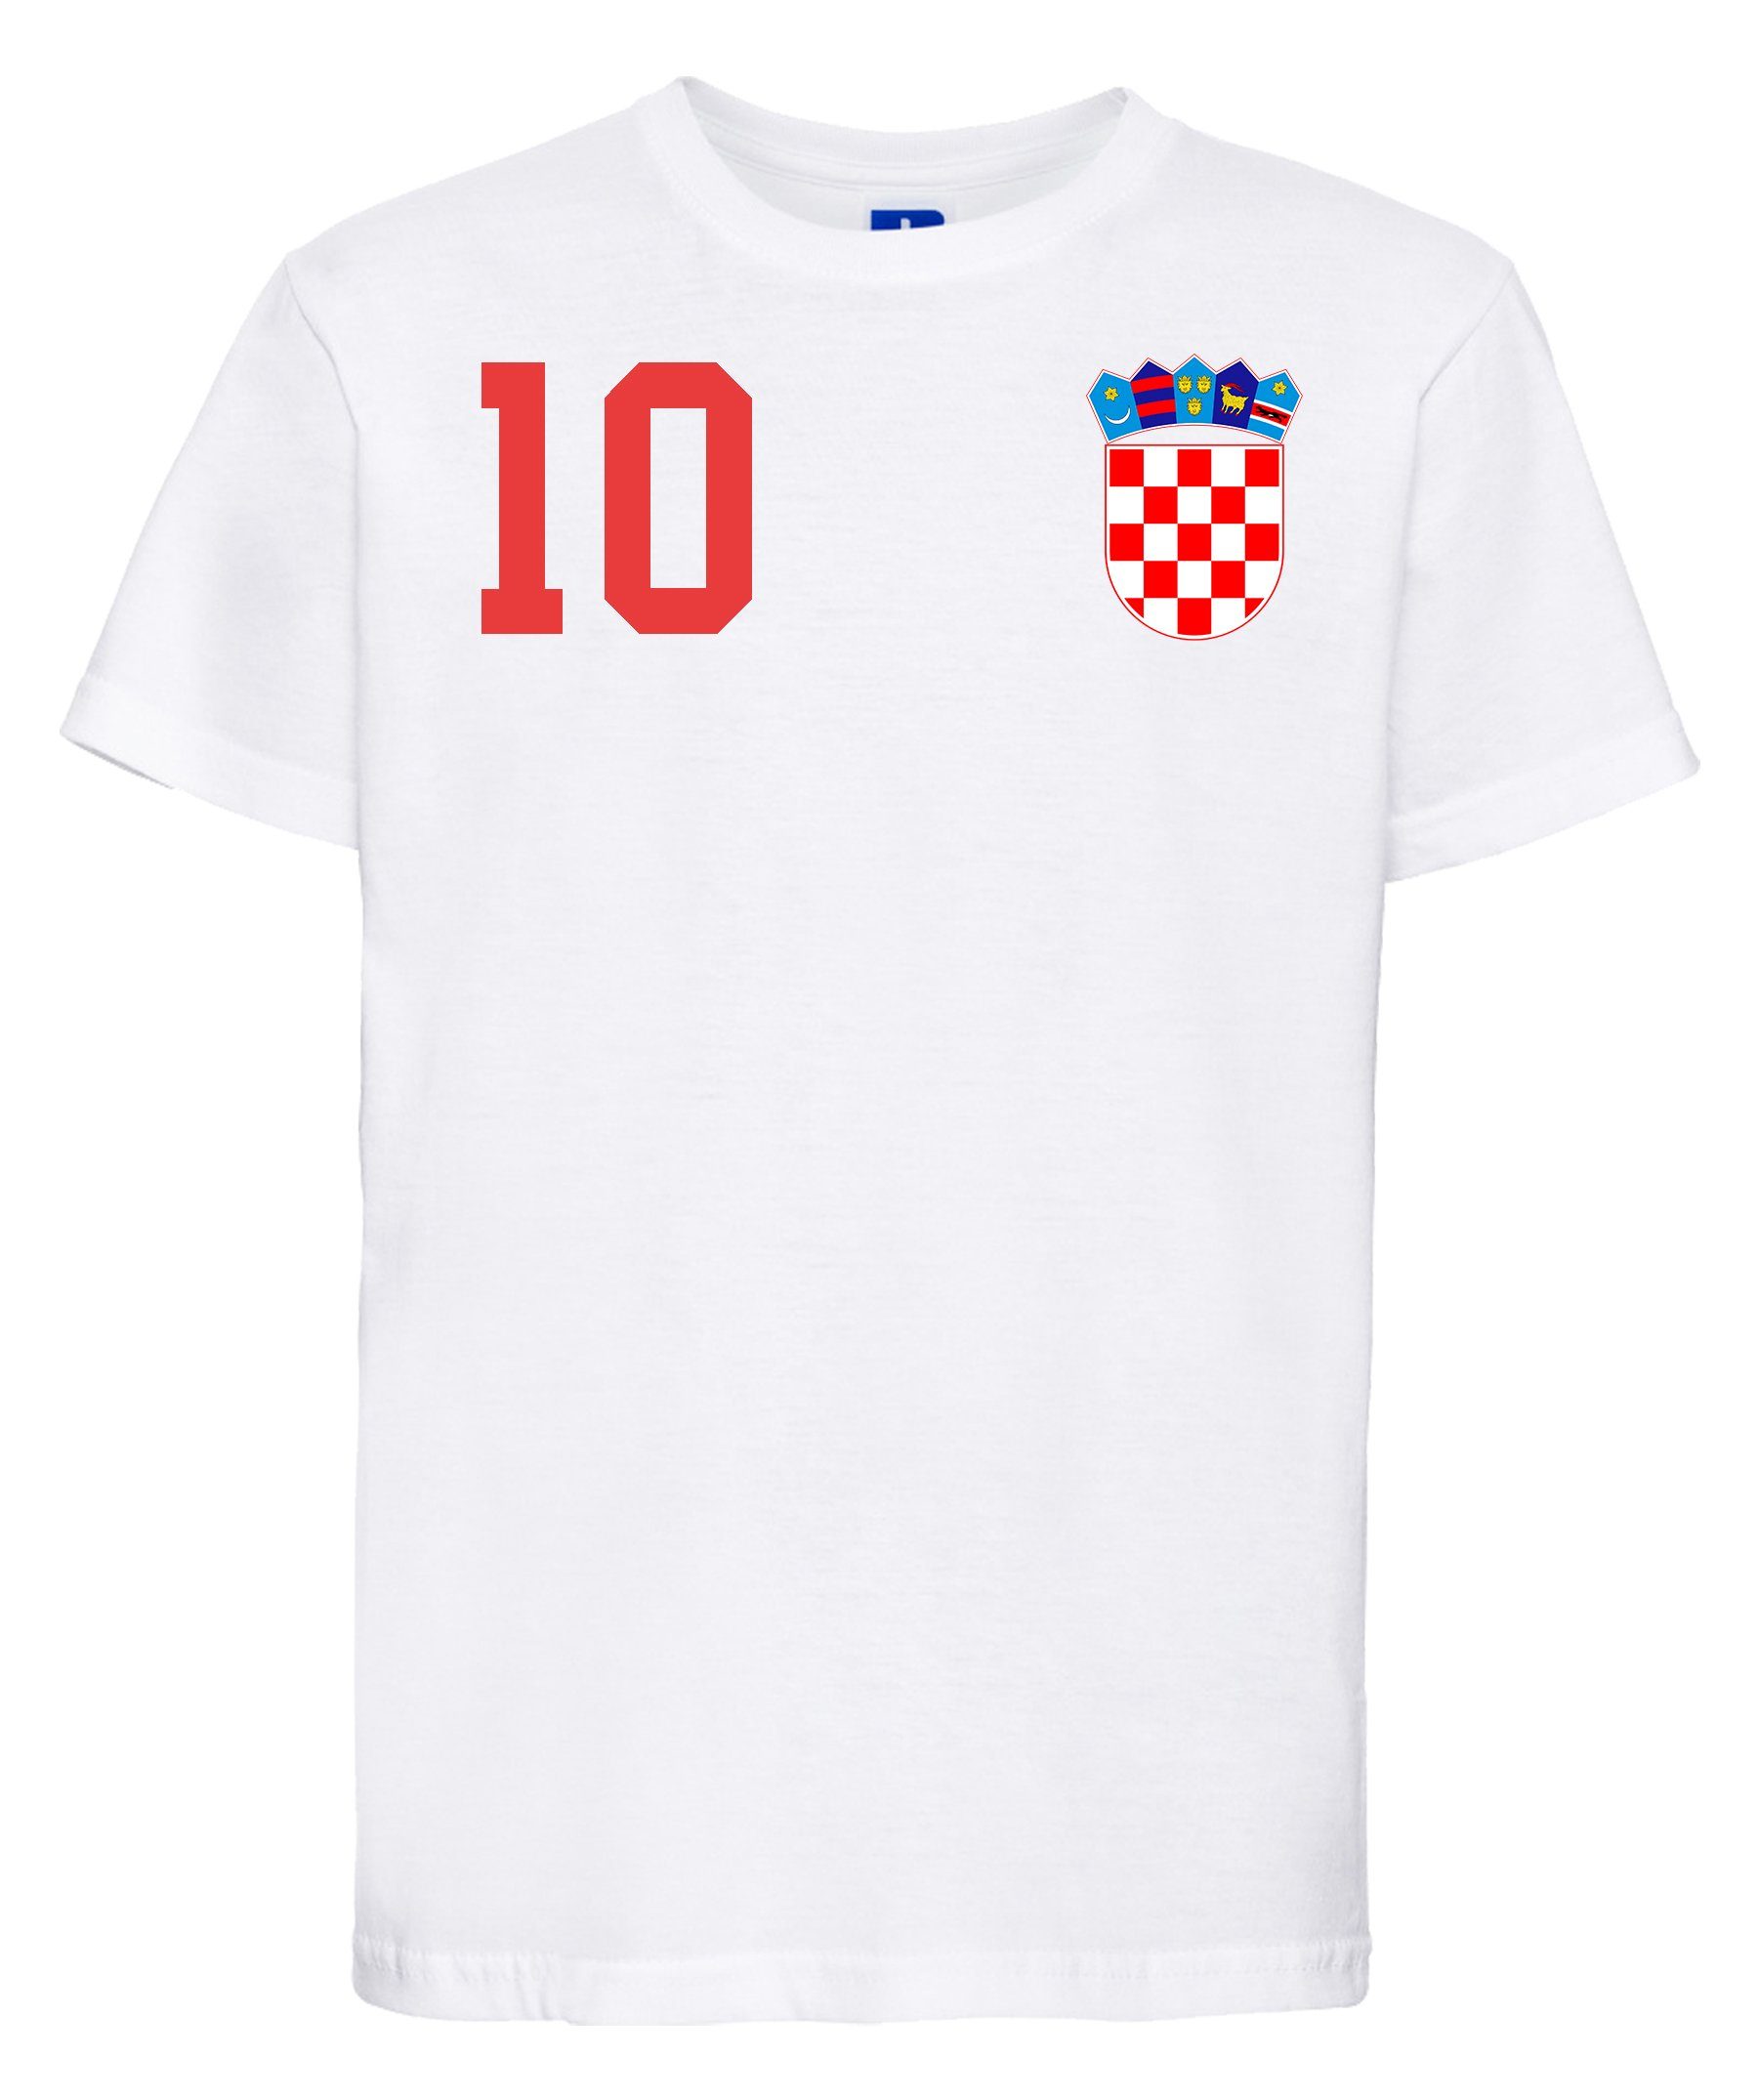 Kroatien EM 2020 Fanartikel Fanshirt Fußball Fan Kinder Jungen T-Shirt Trikot 